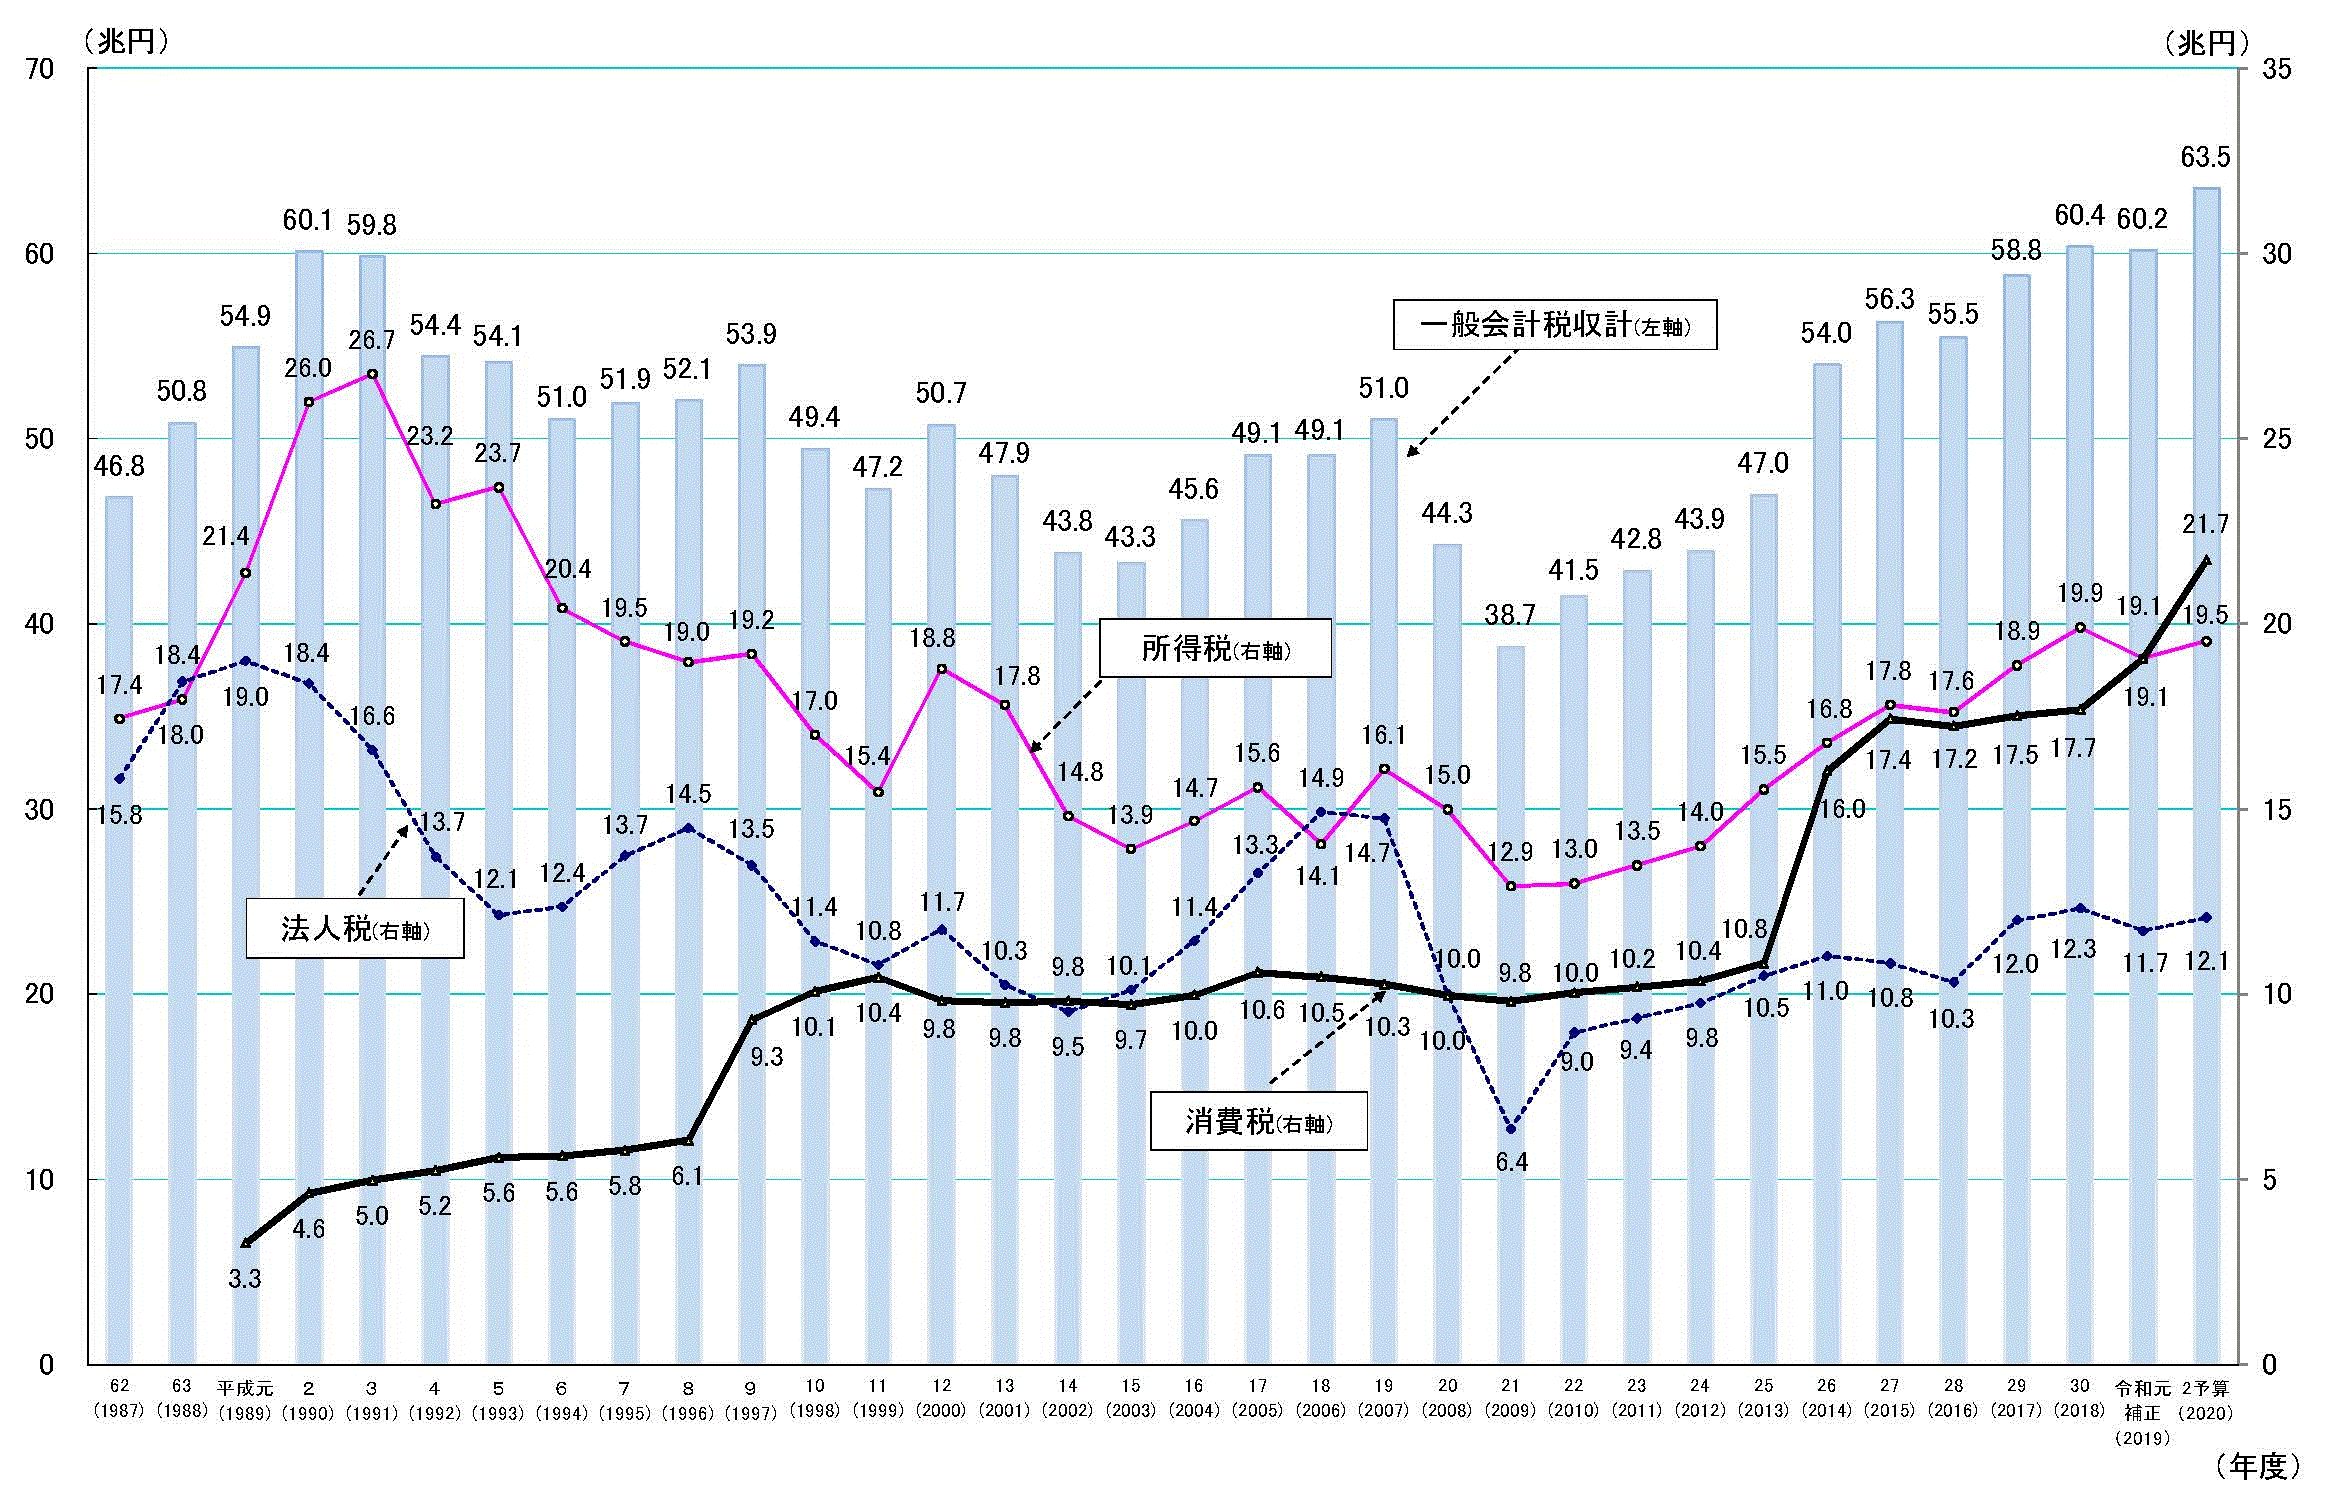 日本の税収の推移